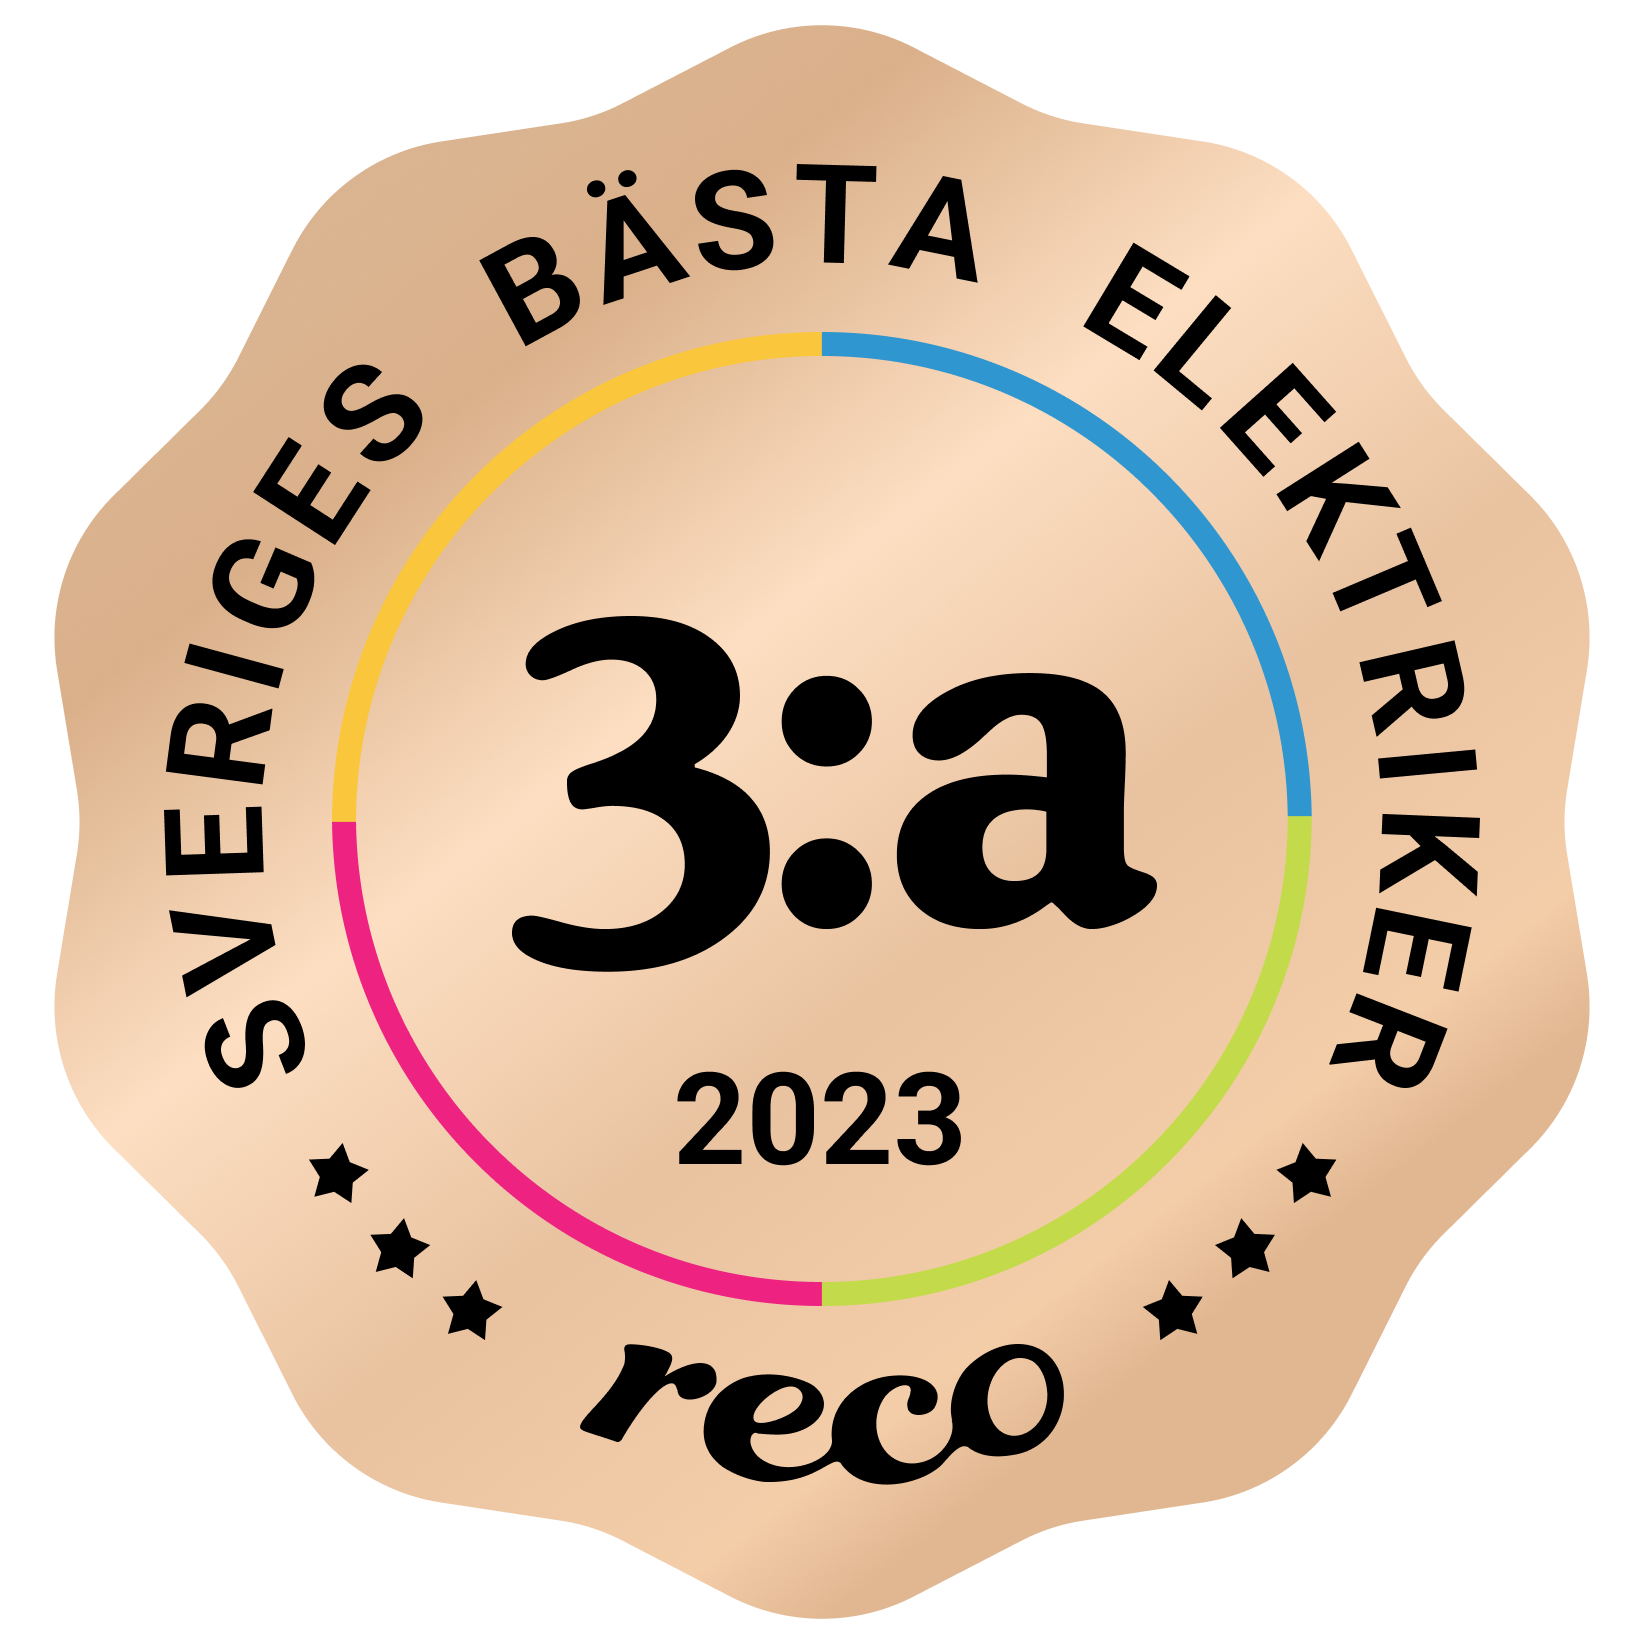 Bagde - Best in Sweden - Elektriker - Third@2x